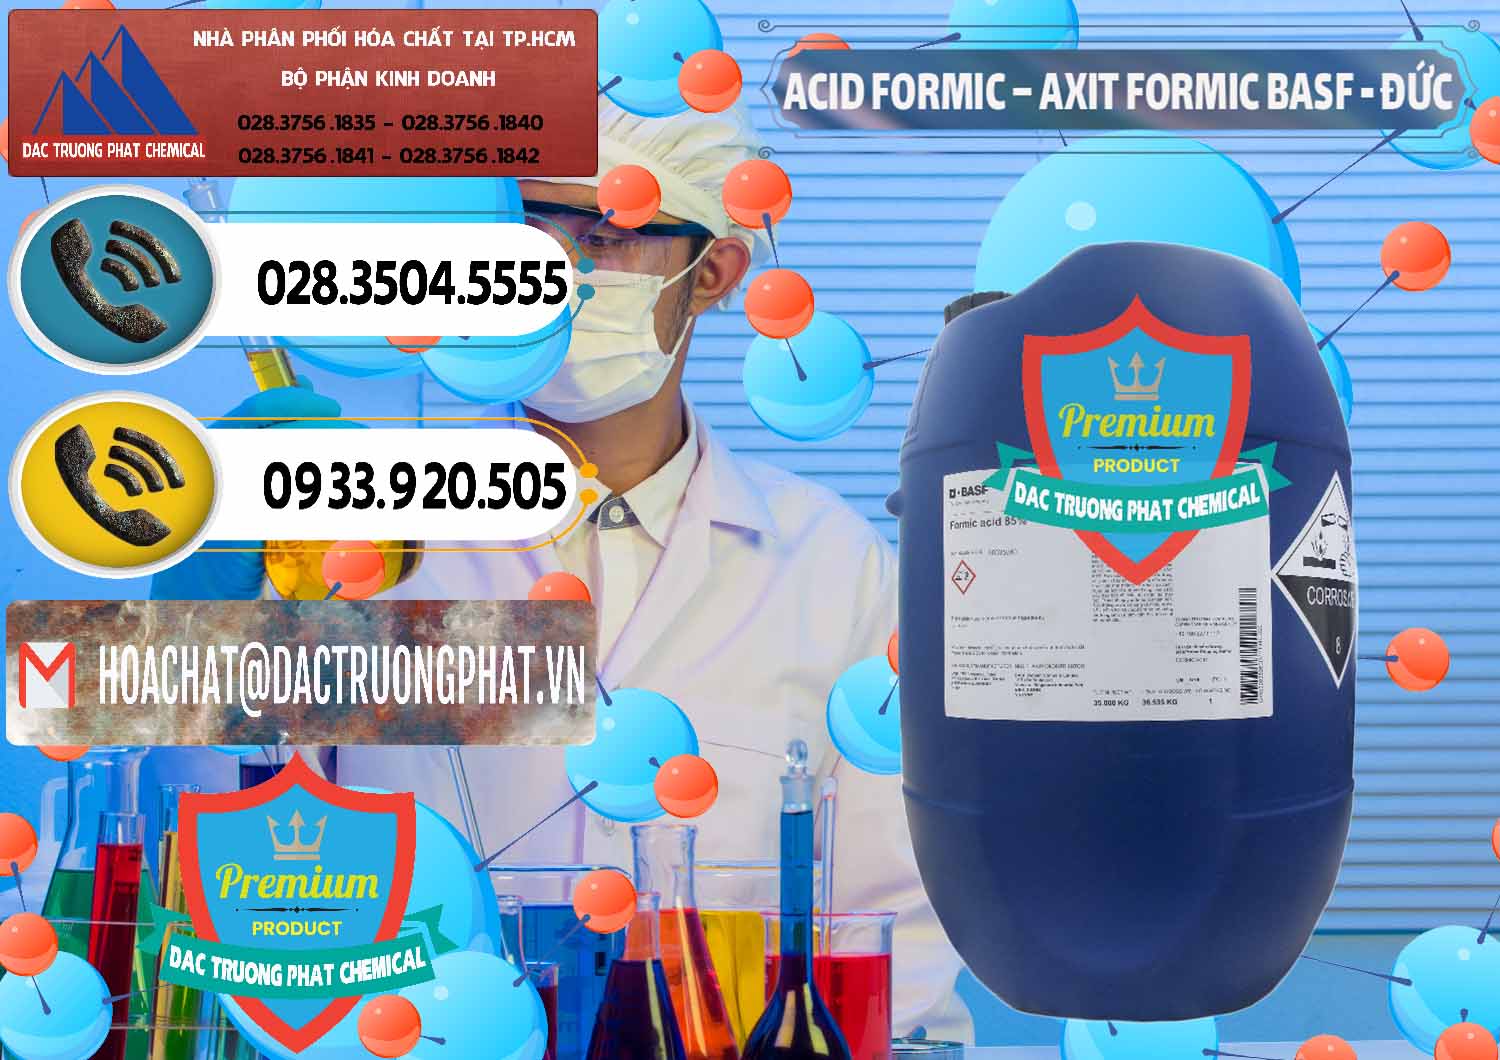 Nơi bán _ cung cấp Acid Formic - Axit Formic BASF Đức Germany - 0028 - Nơi chuyên kinh doanh _ cung cấp hóa chất tại TP.HCM - hoachatdetnhuom.vn